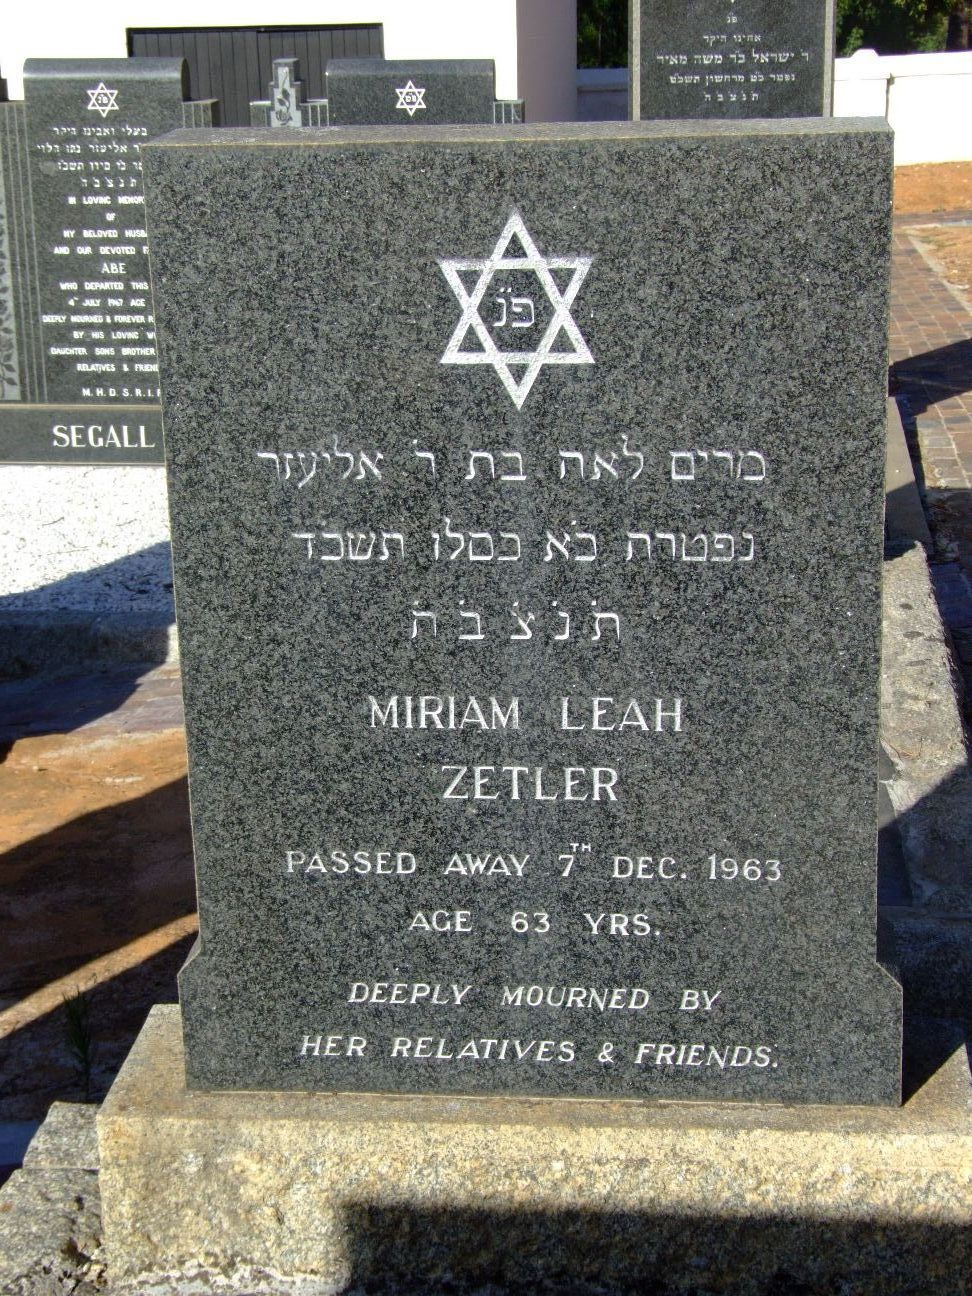 ZETLER Miriam Leah -1963